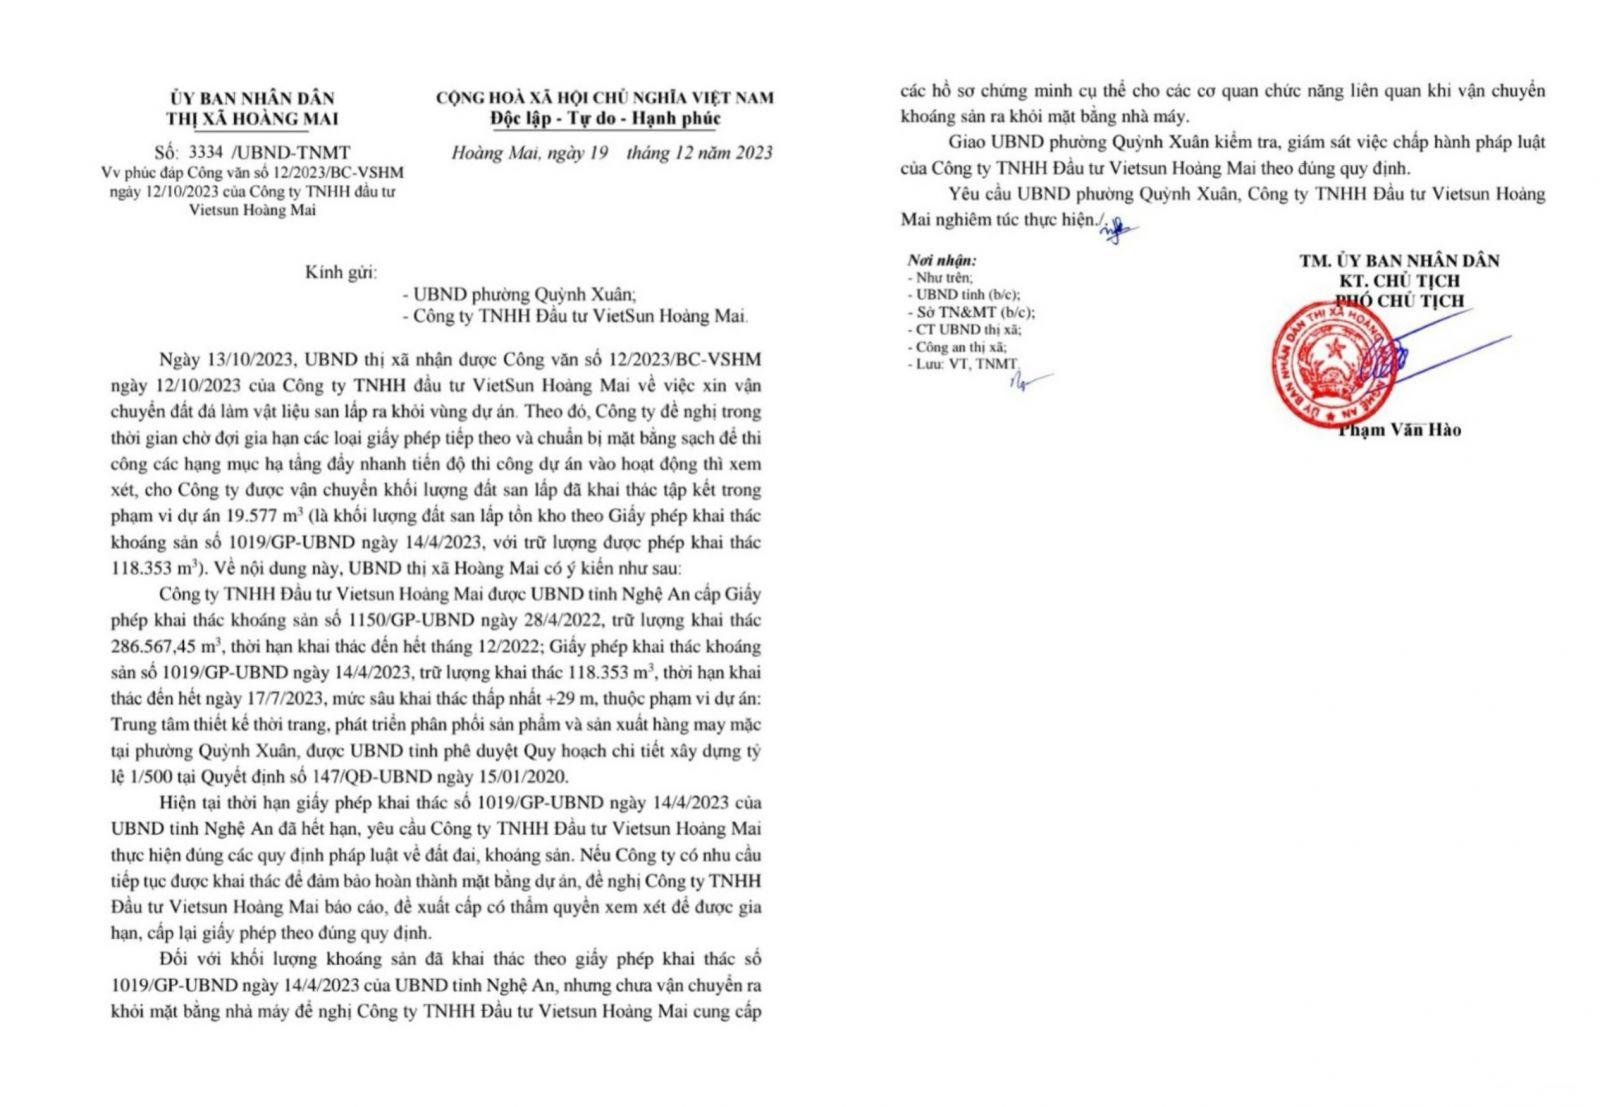 ông Phạm Văn Hào – Phó UBND TX Hoàng Mai đã ký, ban hành Công văn số 3334/UBND-TNMT ngày 19/12/2023 về việc phúc đáp Công văn số 12/2023/BC-VSHM ngày 12/10/2023 của Công ty TNHH Đầu tư VietSun Hoàng Mai.